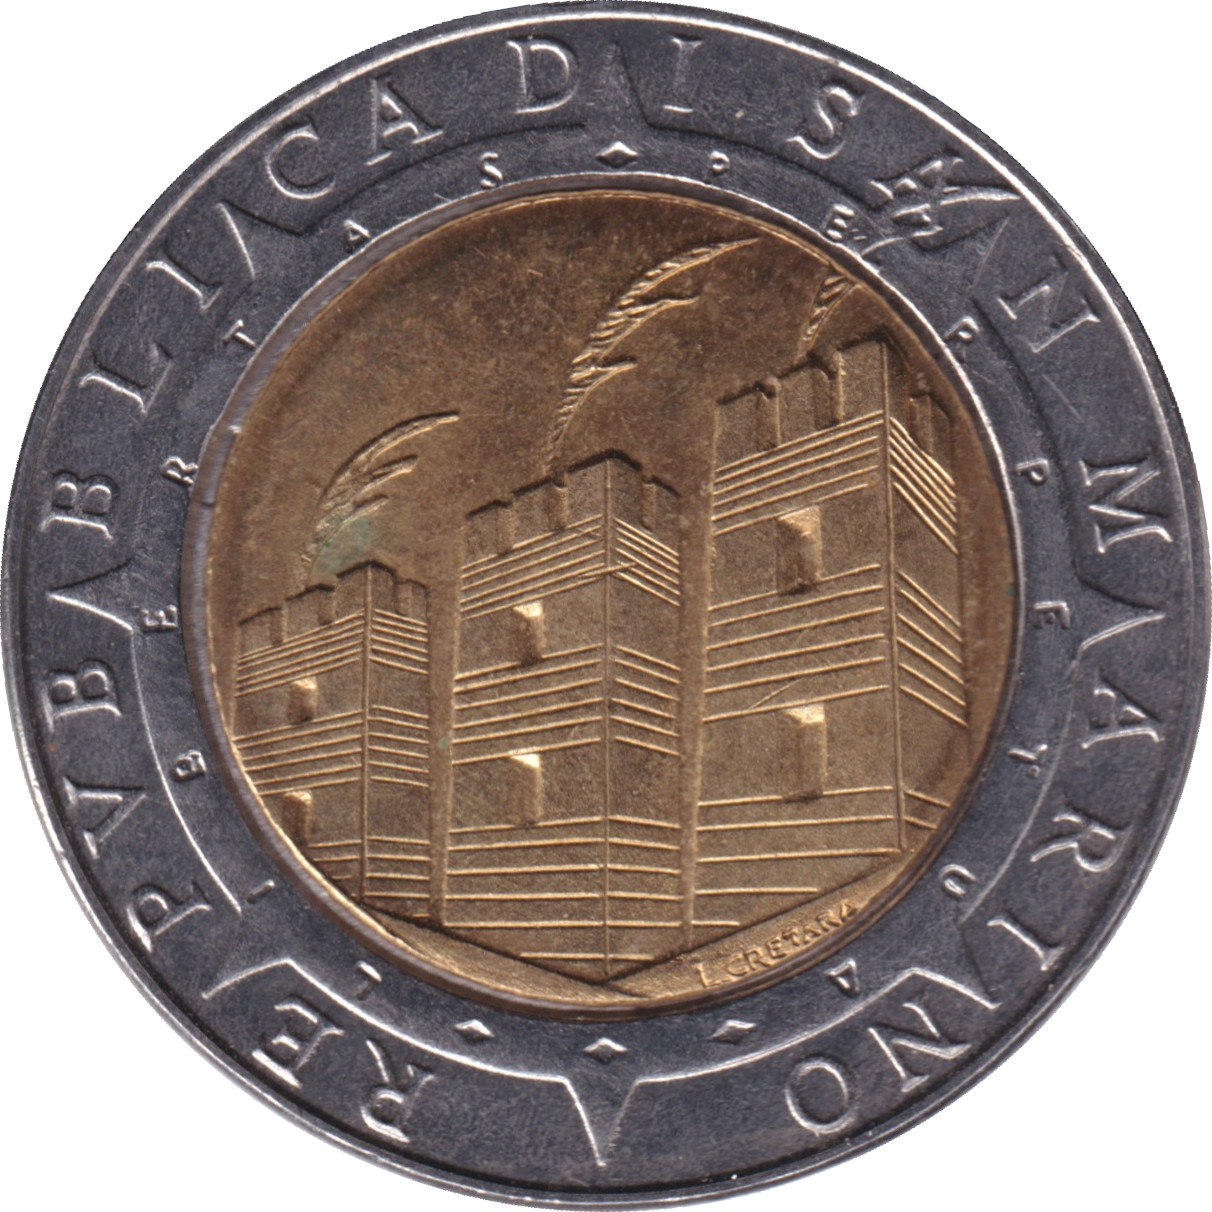 500 lire - Découverte des Amériques - 500 years